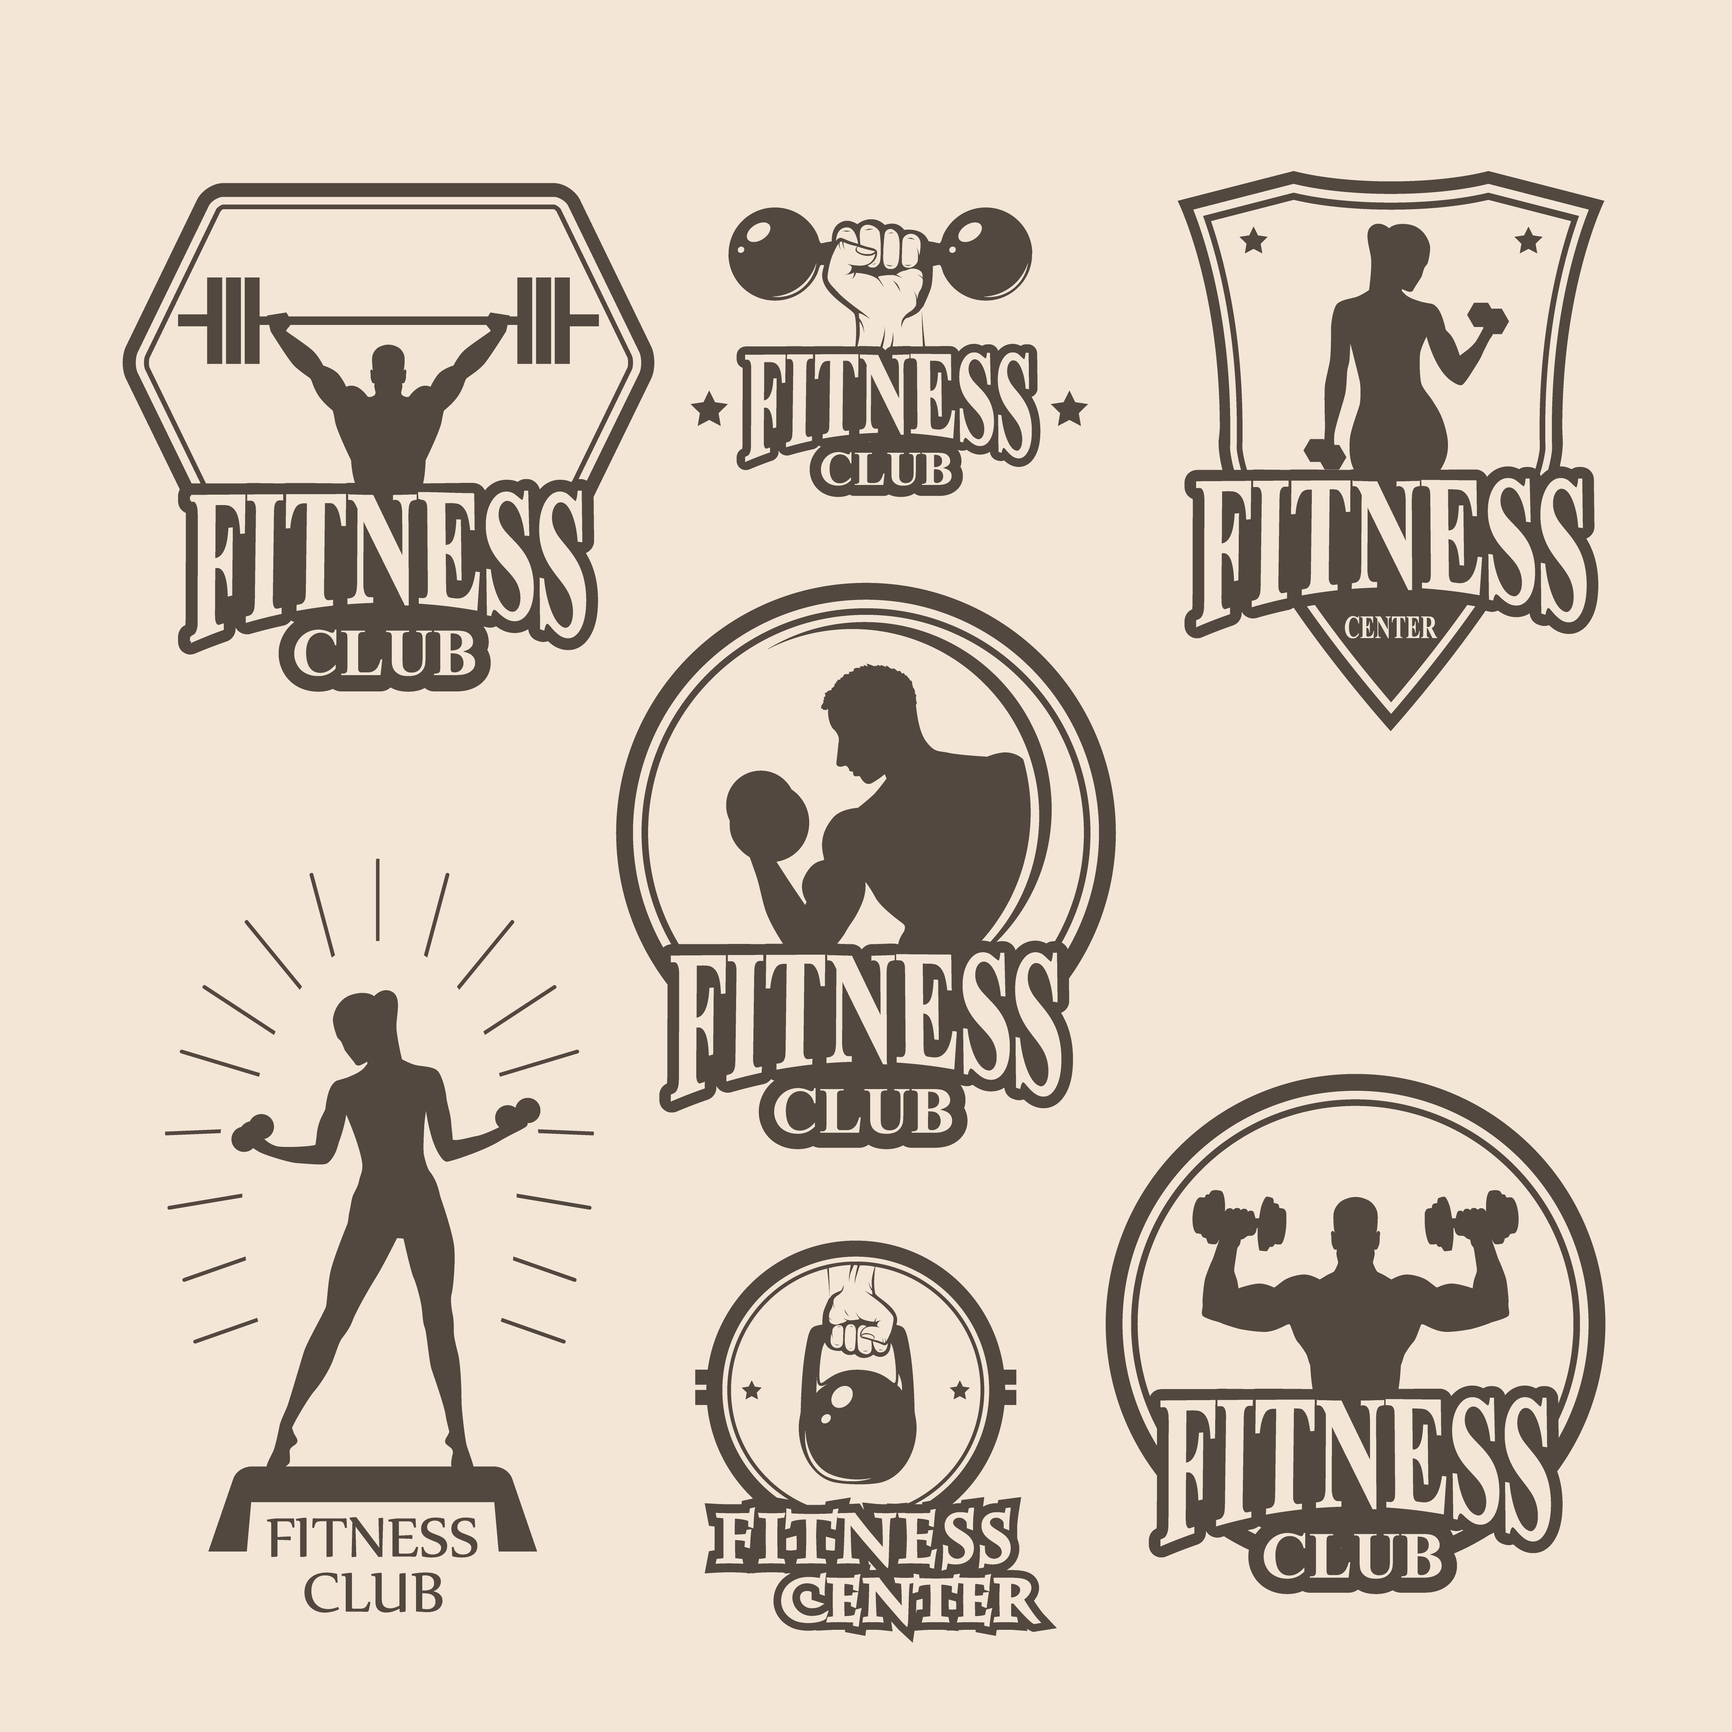 Download Design Elements of a Fitness Logo That Motivates • Online Logo Maker's Blog